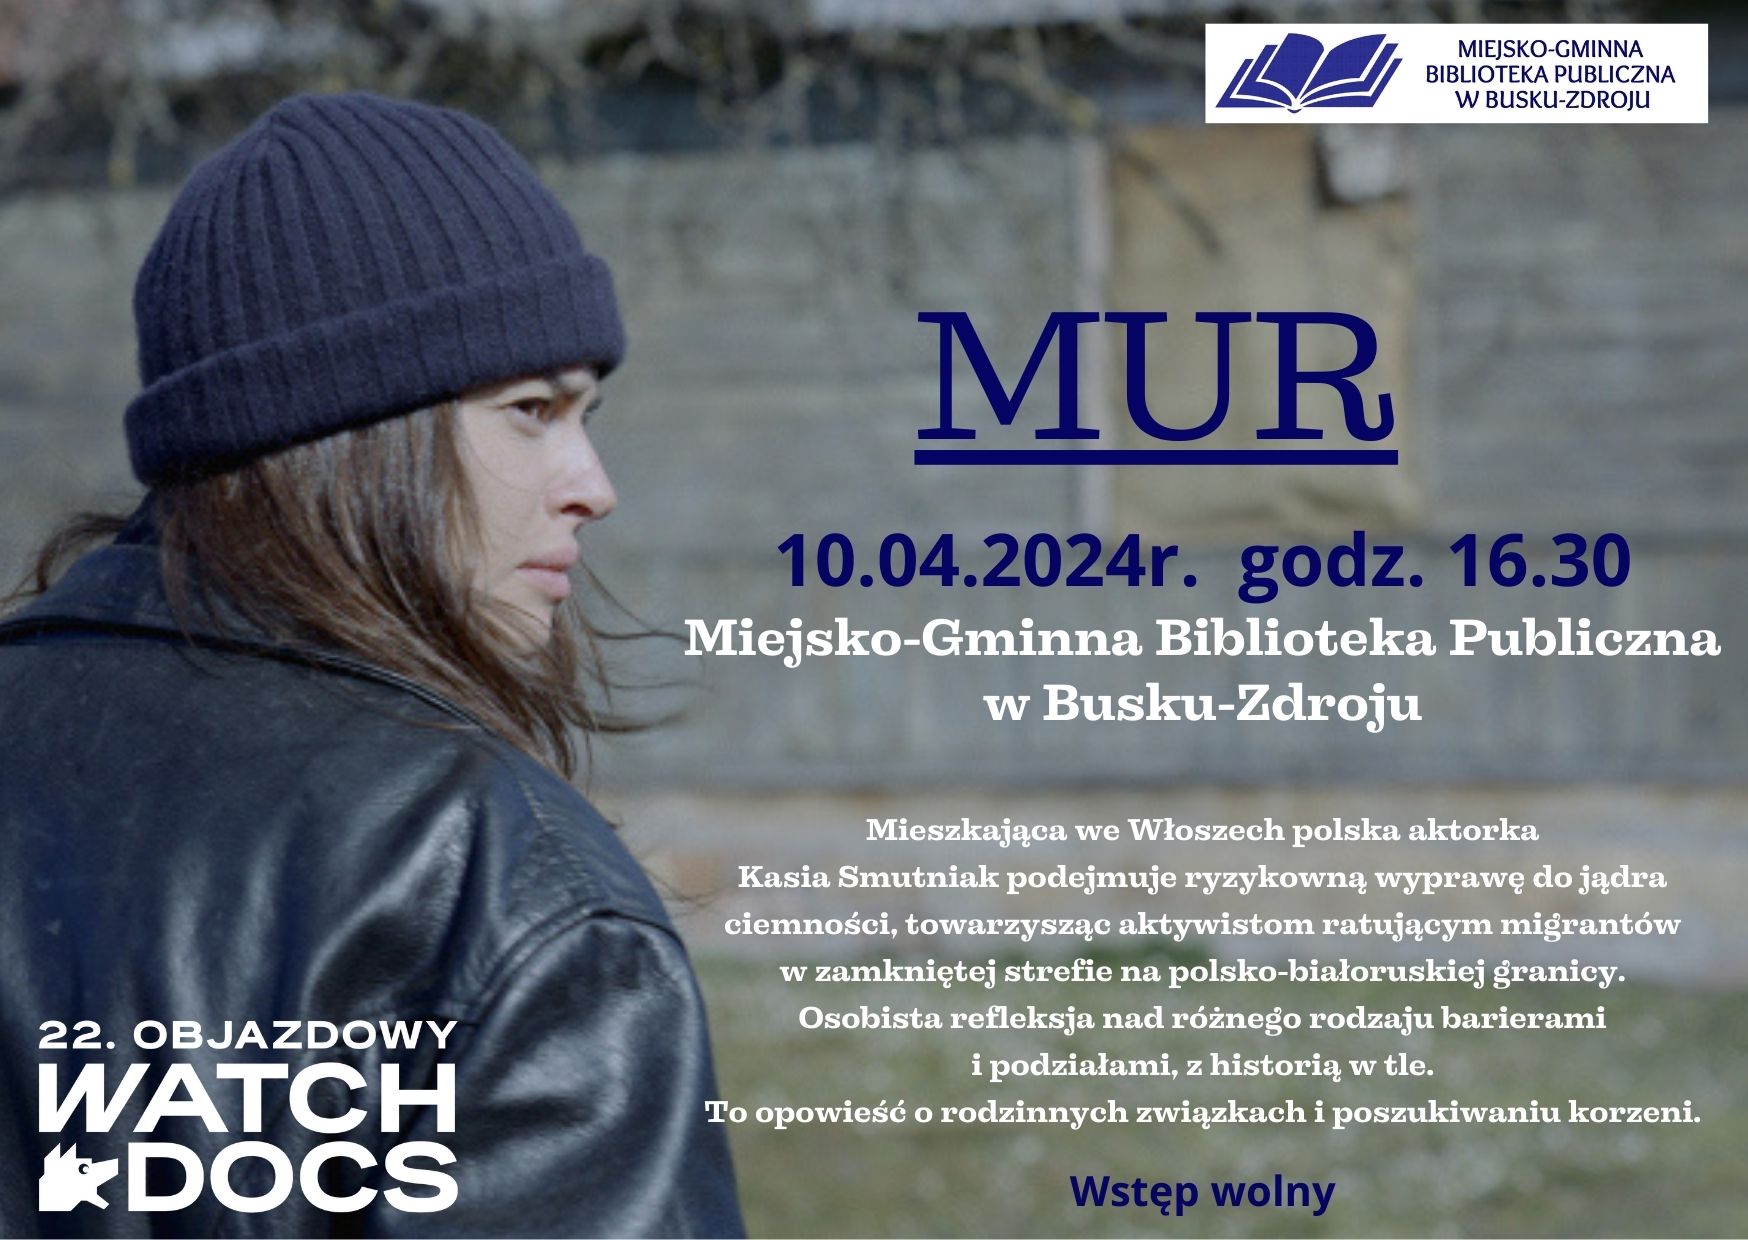 Miejsko-Gminna Biblioteka Publiczna w Busku-Zdroju ma zaszczyt zaprosić Państwa na projekcję filmu pt. "MUR".